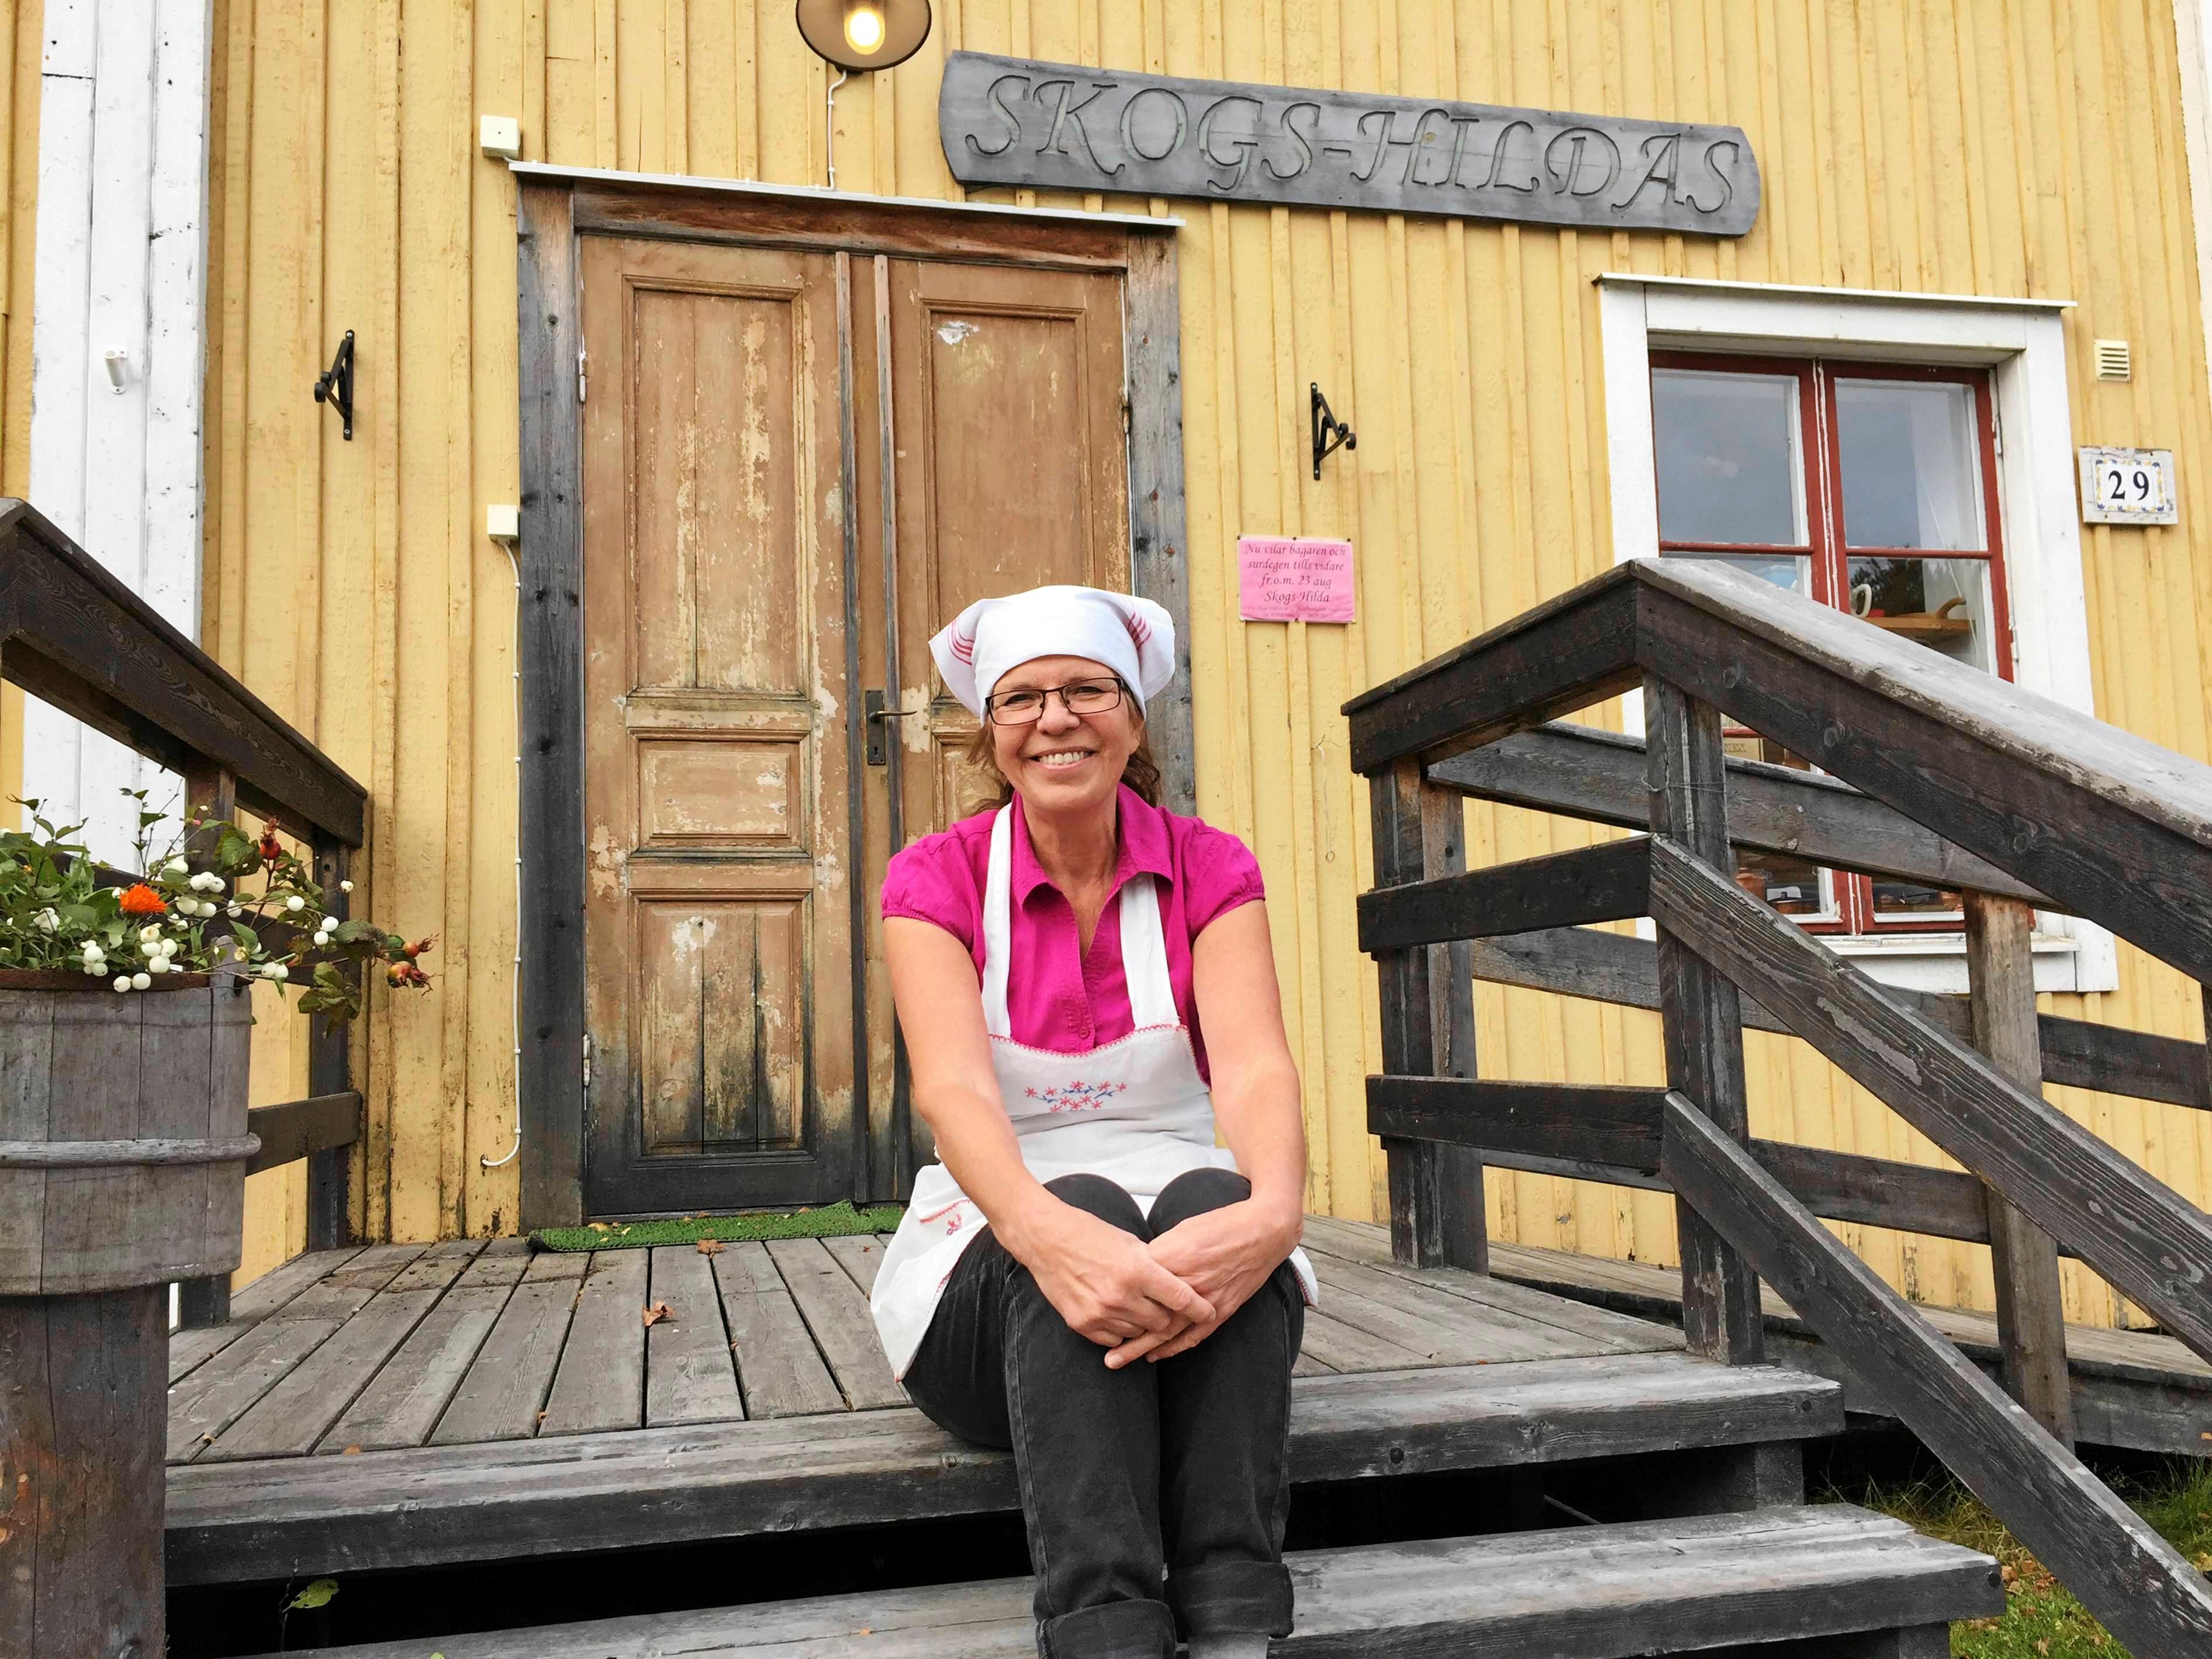 Skogs-Hilda, Ingrid Öhlund är glad över uppdraget att baka vetebullar till hovet. Foto: Ulf Backerholm